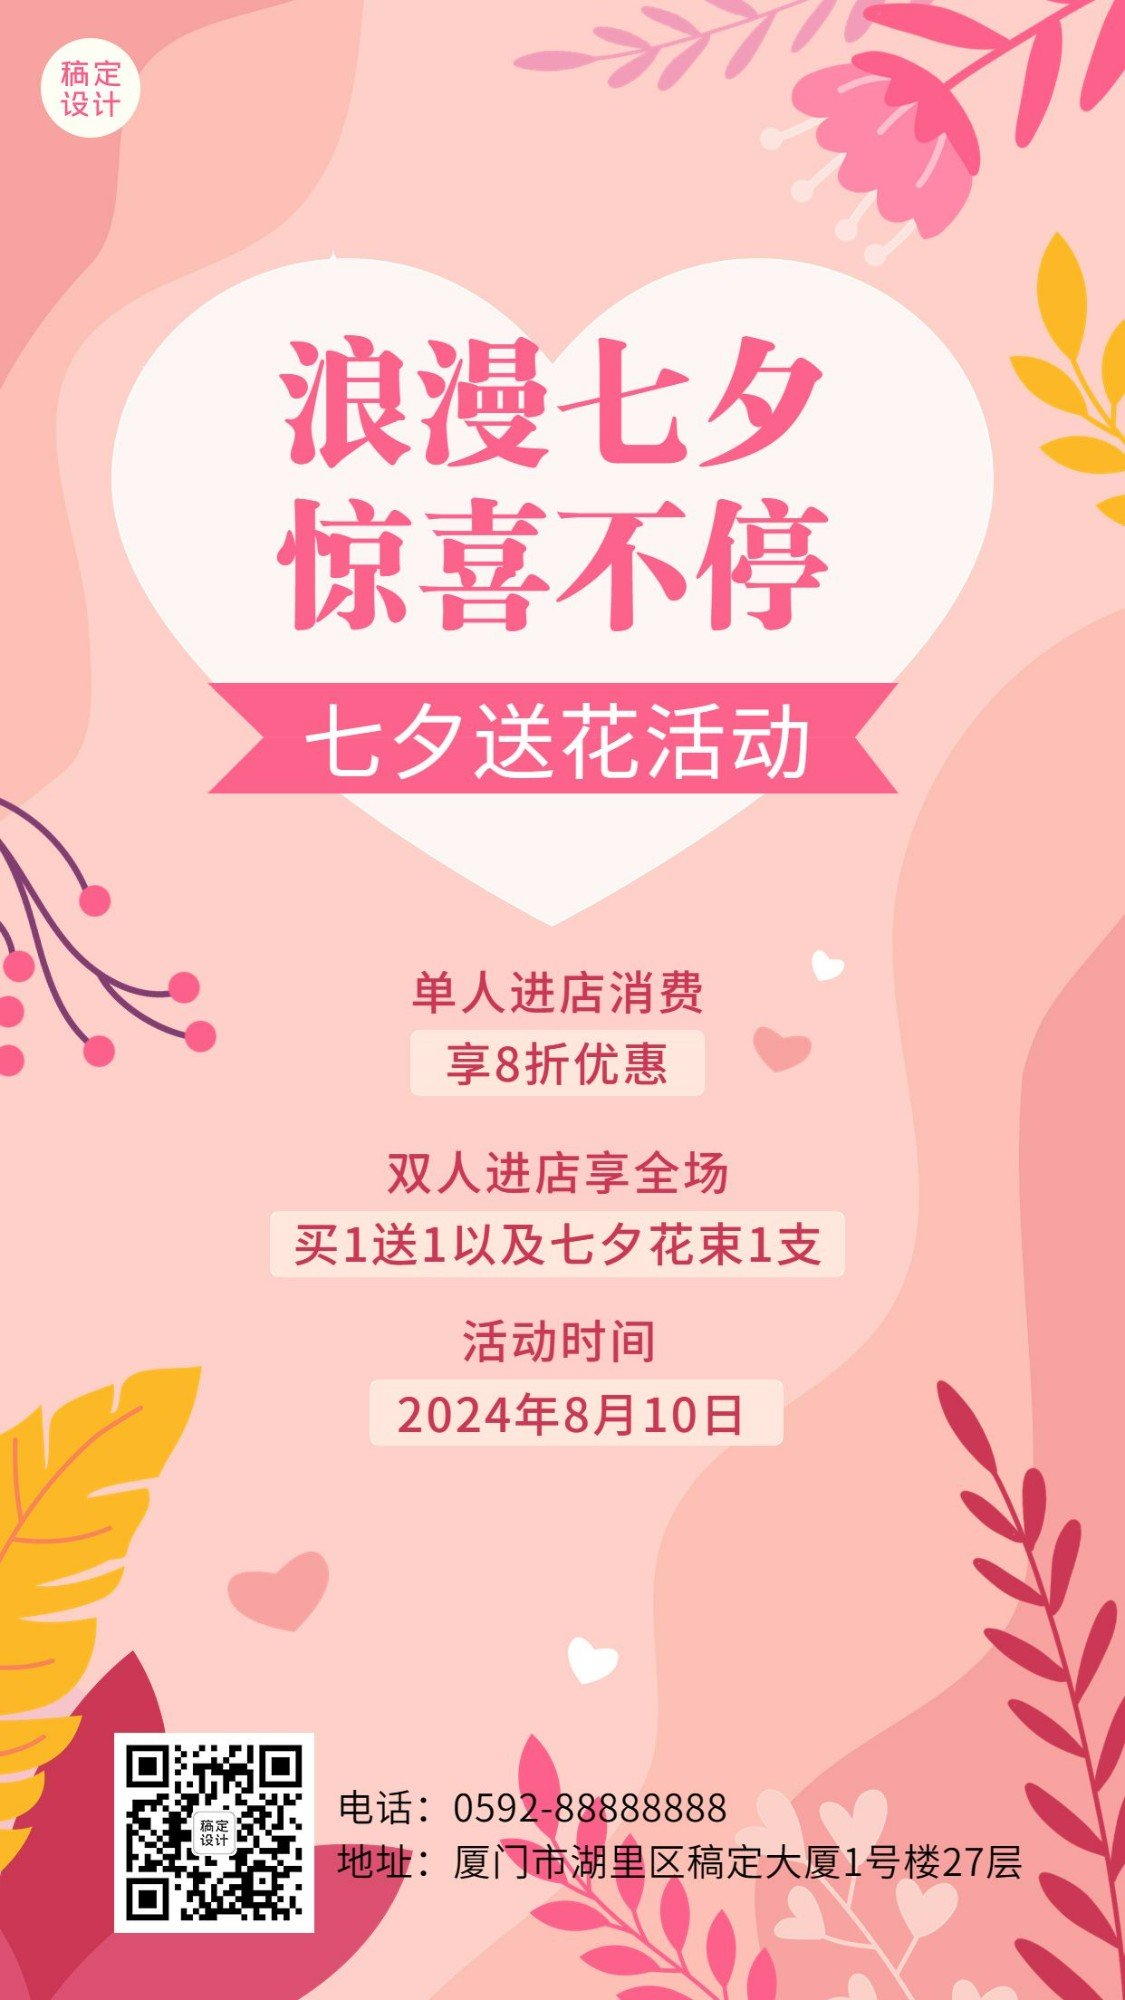 七夕情人节店铺营销活动通知宣传手机海报 预览效果